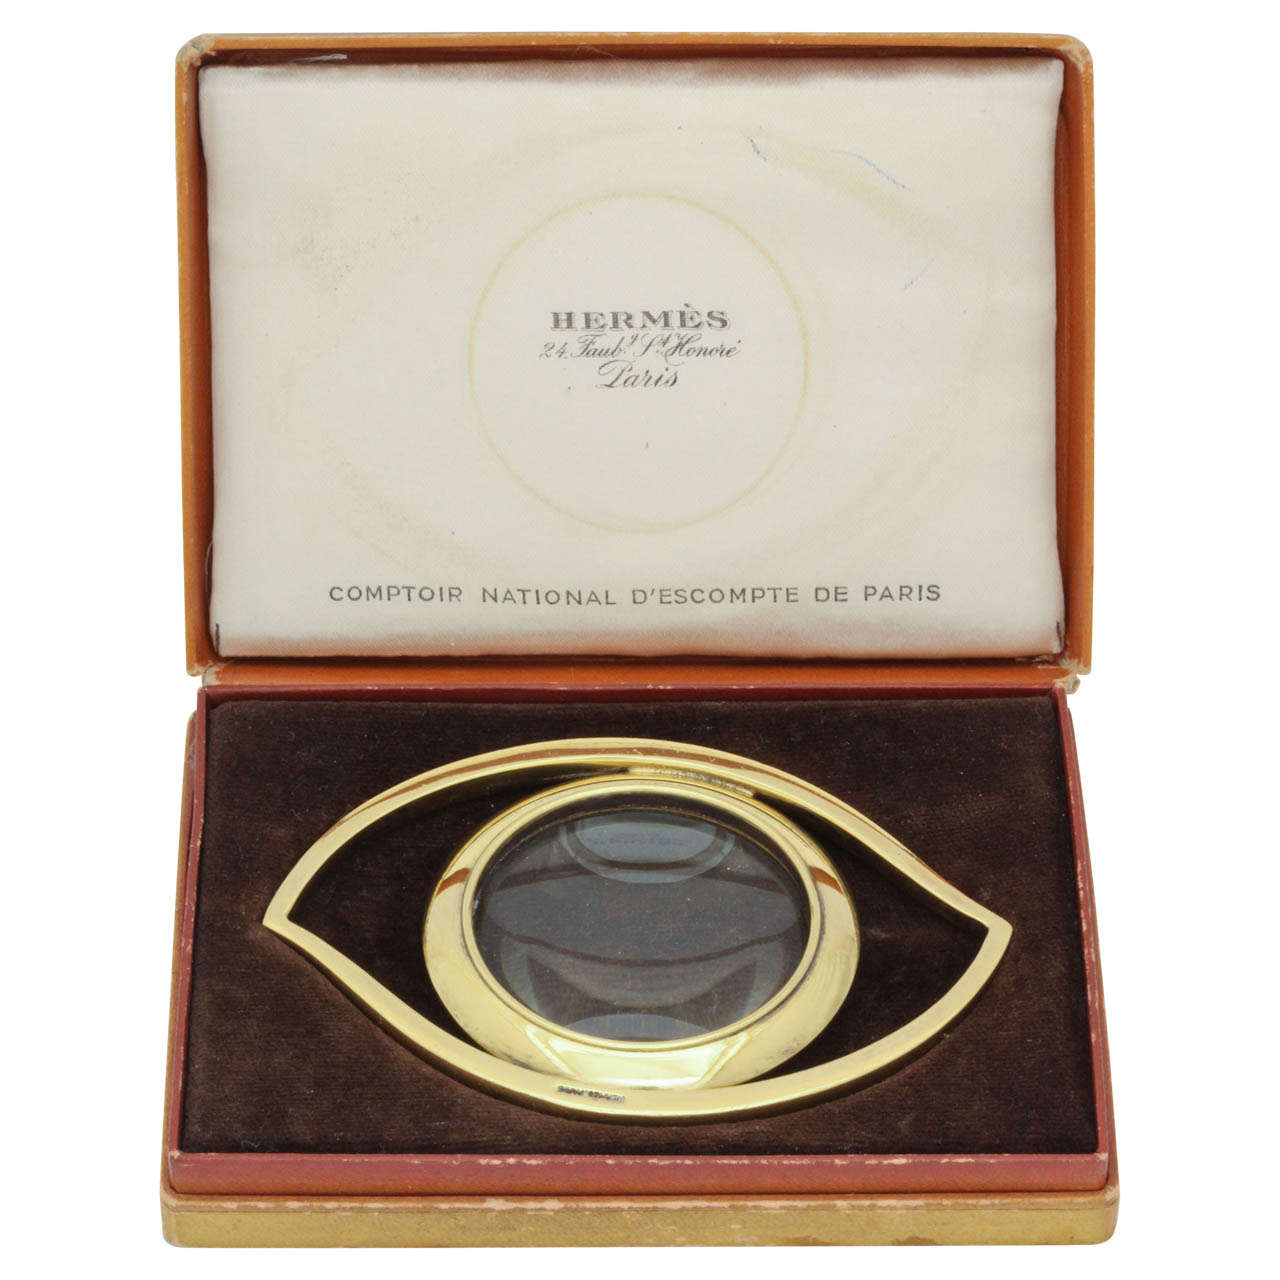 Hermes Eye Desk Magnifying Glass in the Original Box